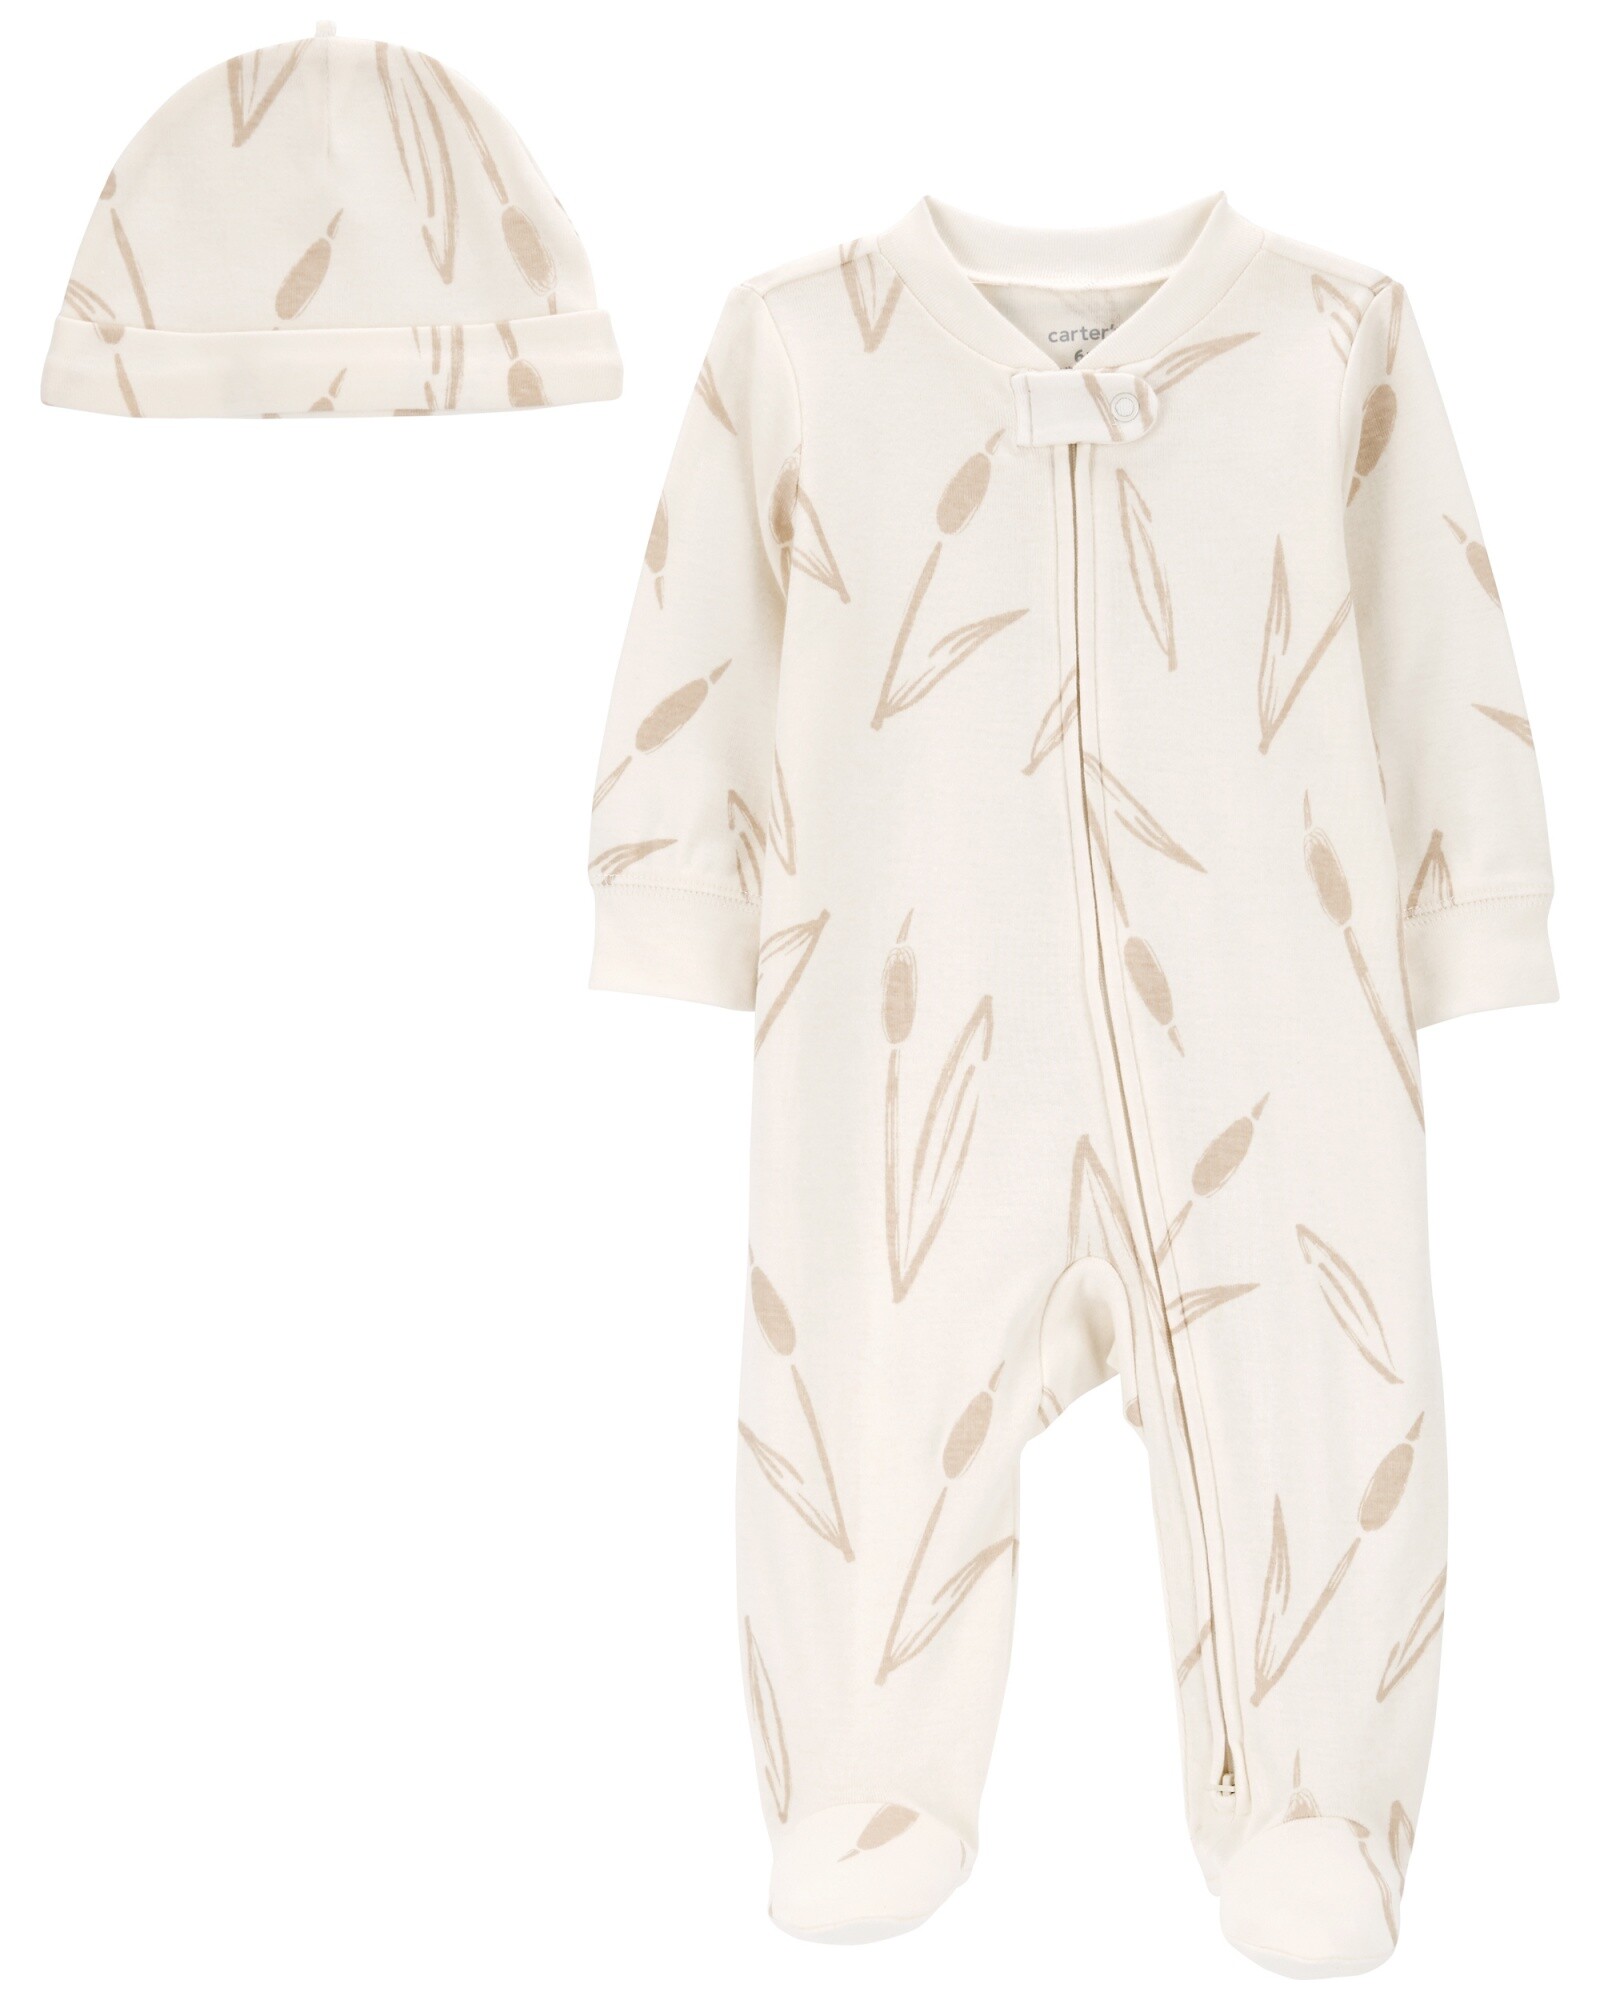 Pijama una pieza de algodón, con pie y gorro, diseño totora Sin color